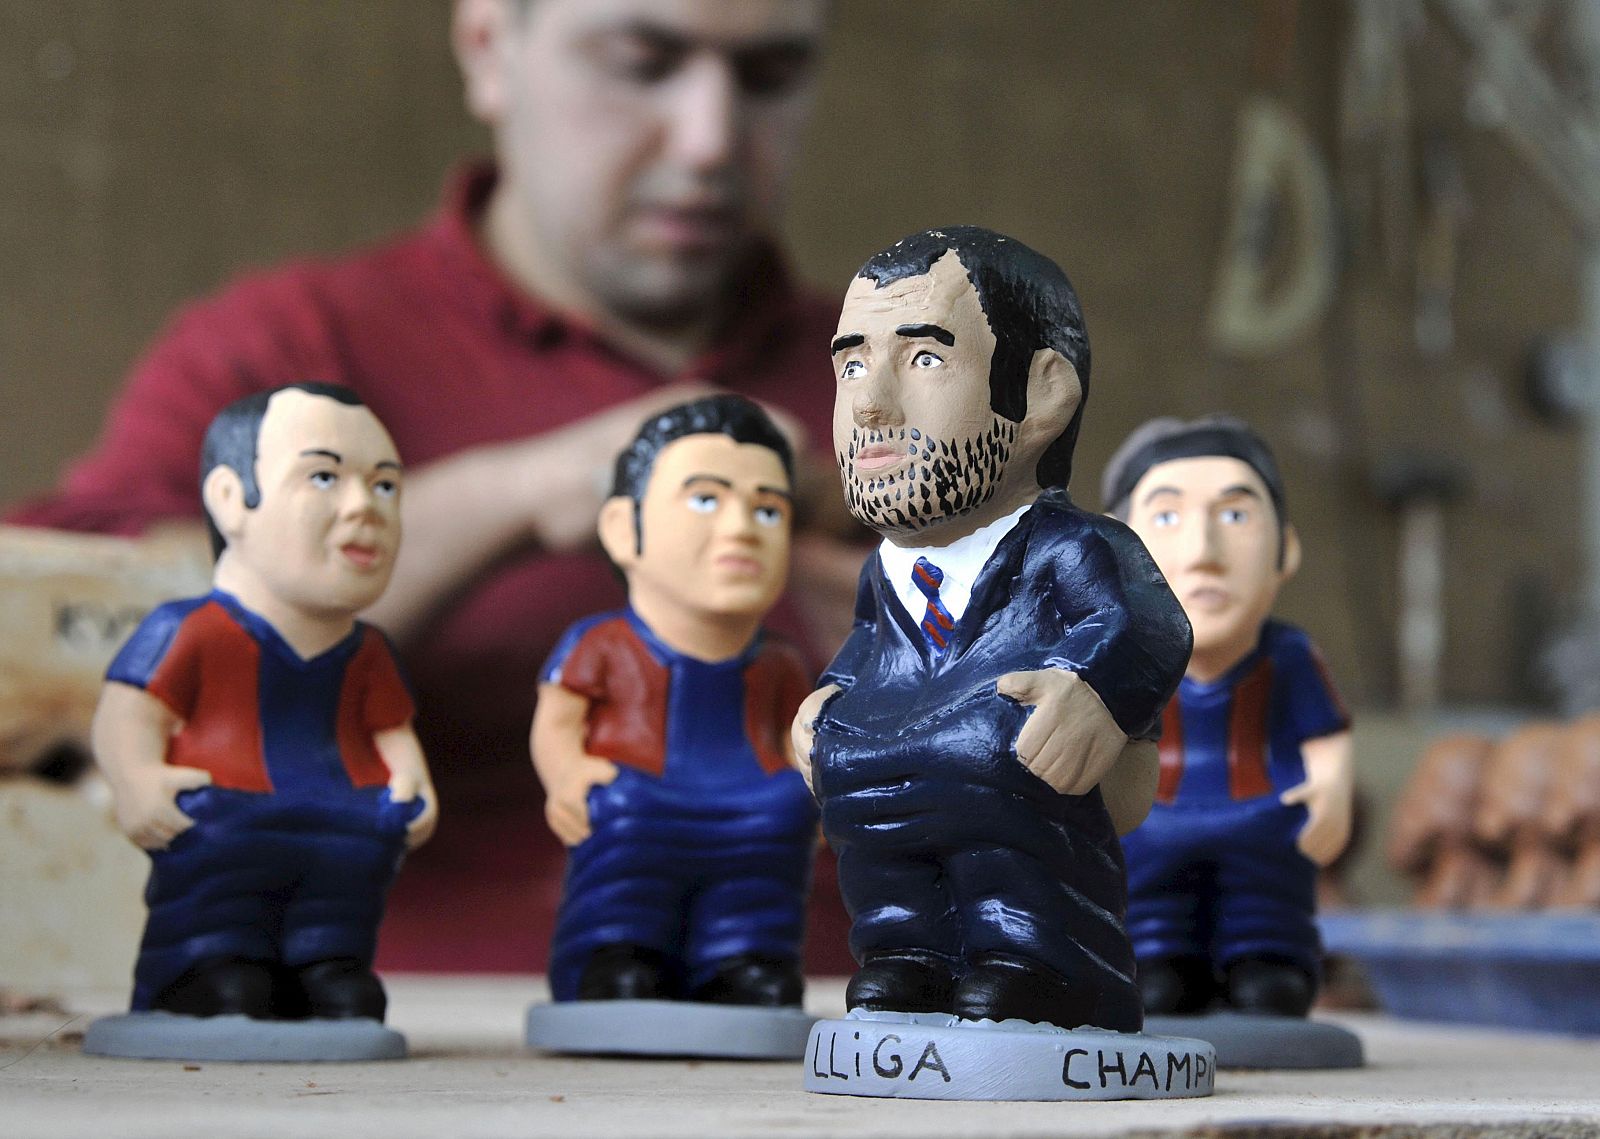 Imágen de los caganers de Guardiola y los jugadores del Barça Iniesta, Xavi e Ibrahimovic.